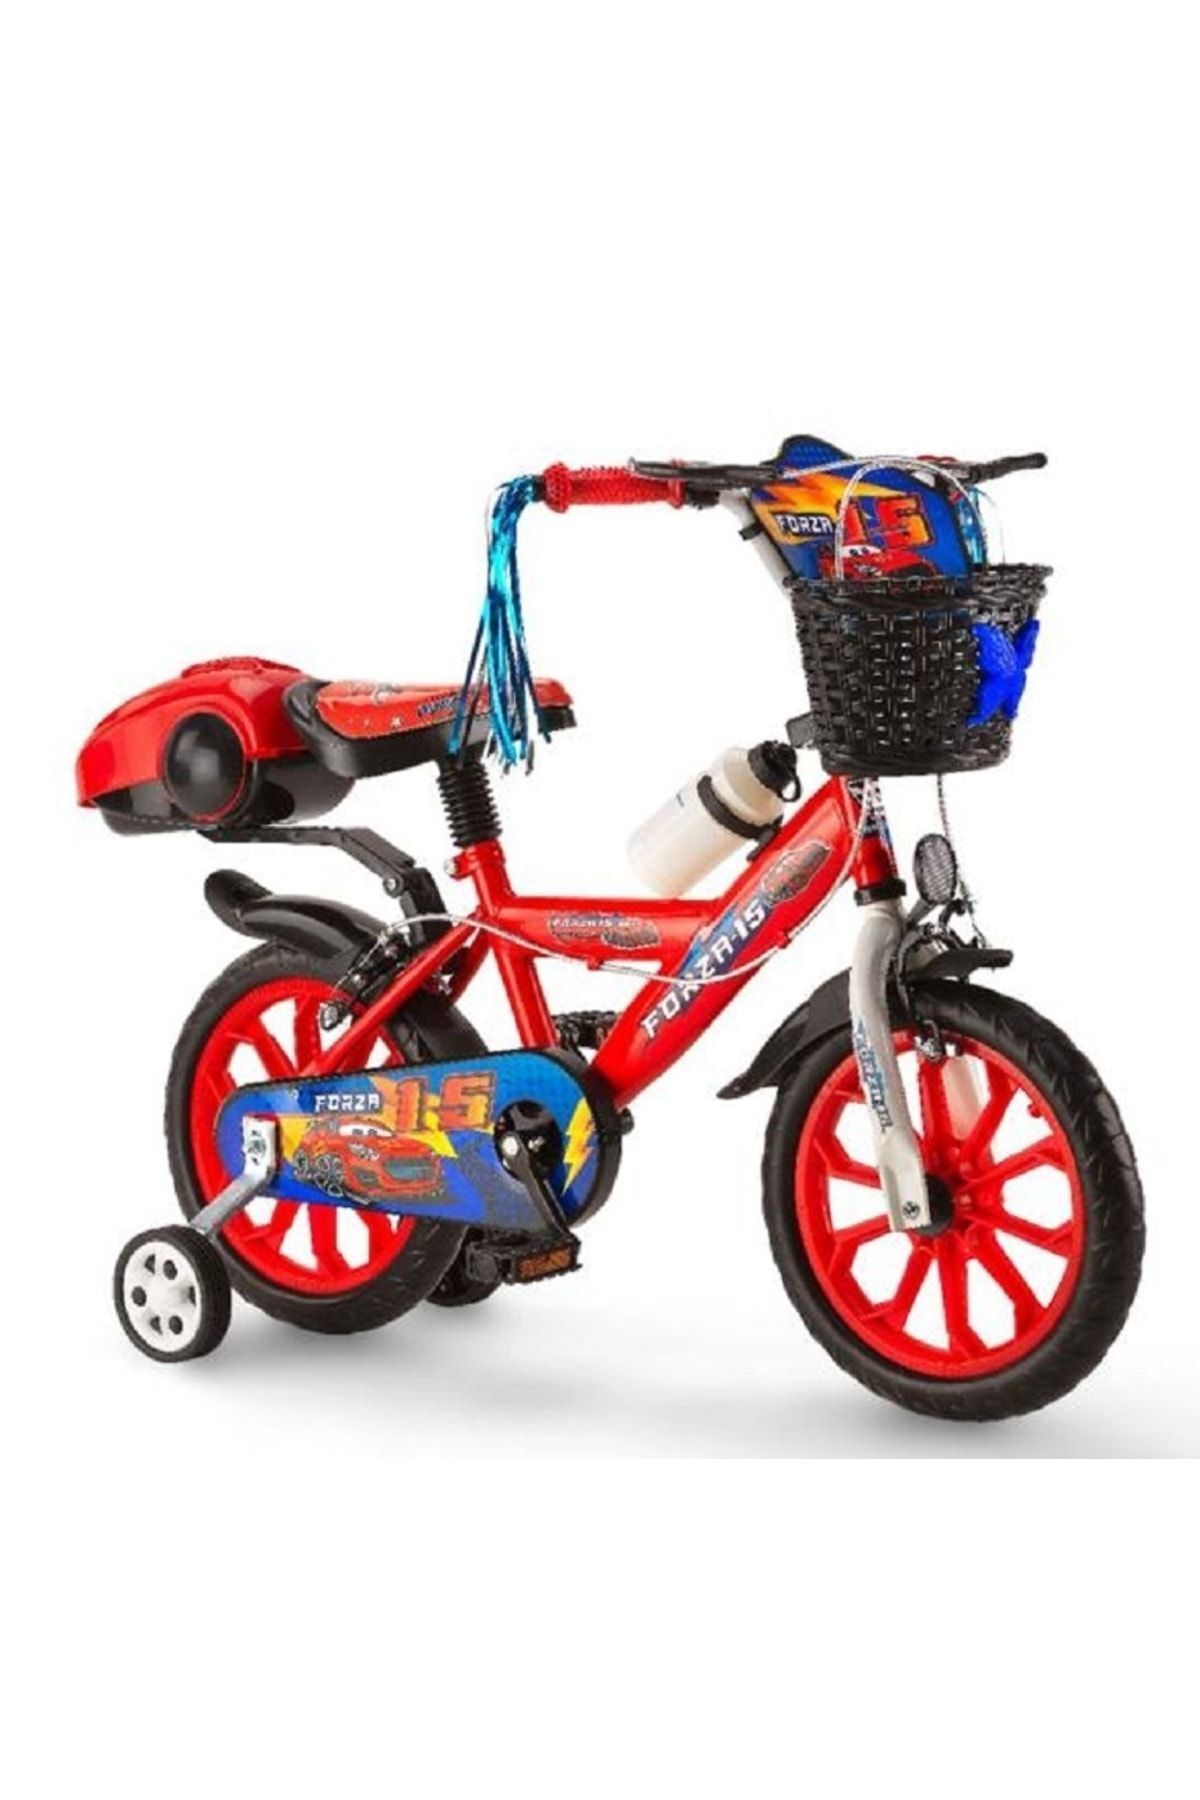 Toyshome Forza 15 Jant Kırmızı Lüx Çocuk Bisikleti ( 4-5-6-7 ) Yaş Grubu Çocuklar Için Uygundur